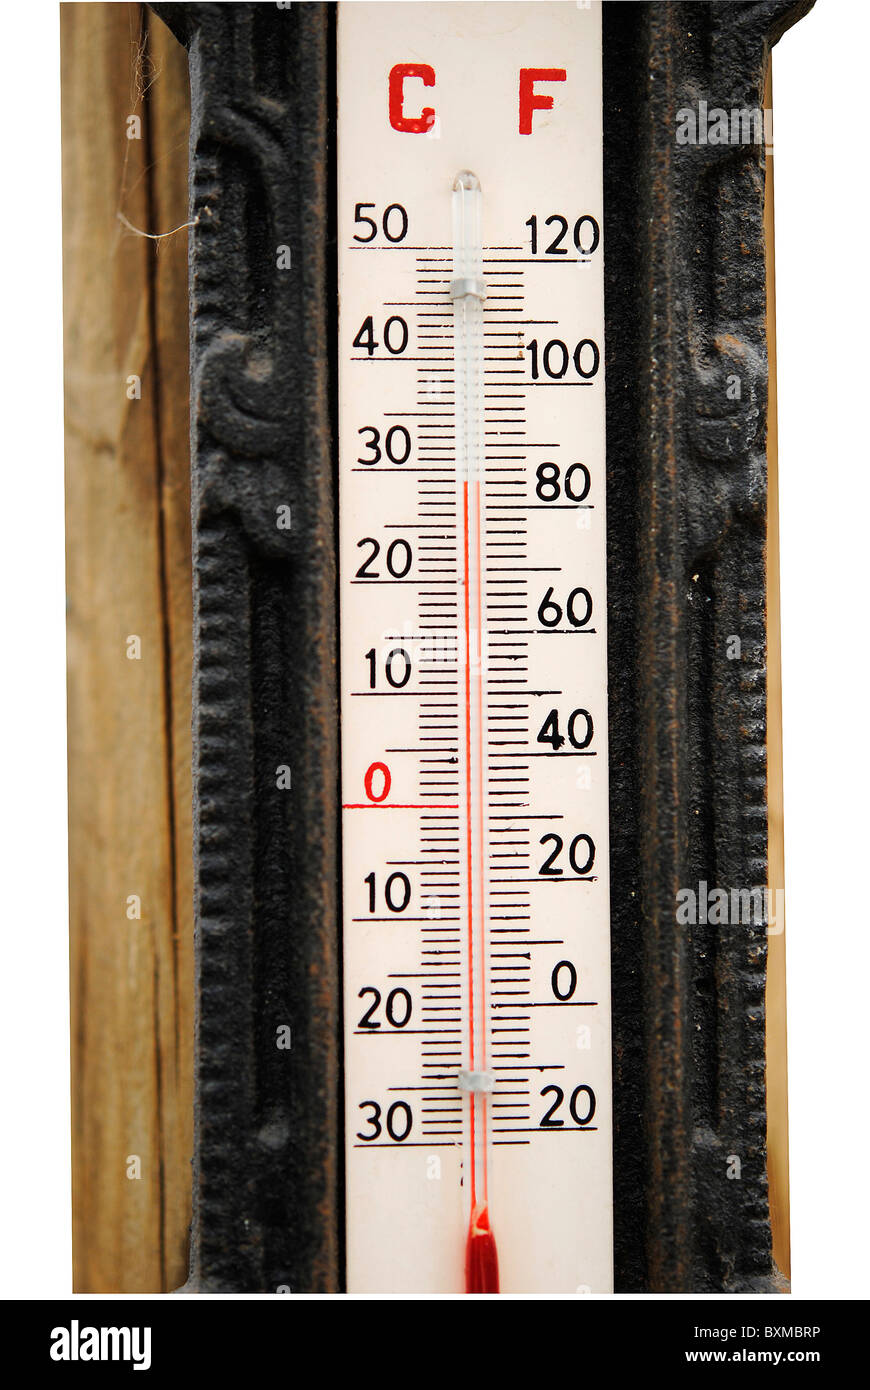 Termometro per misurare la temperatura ambiente in centigradi